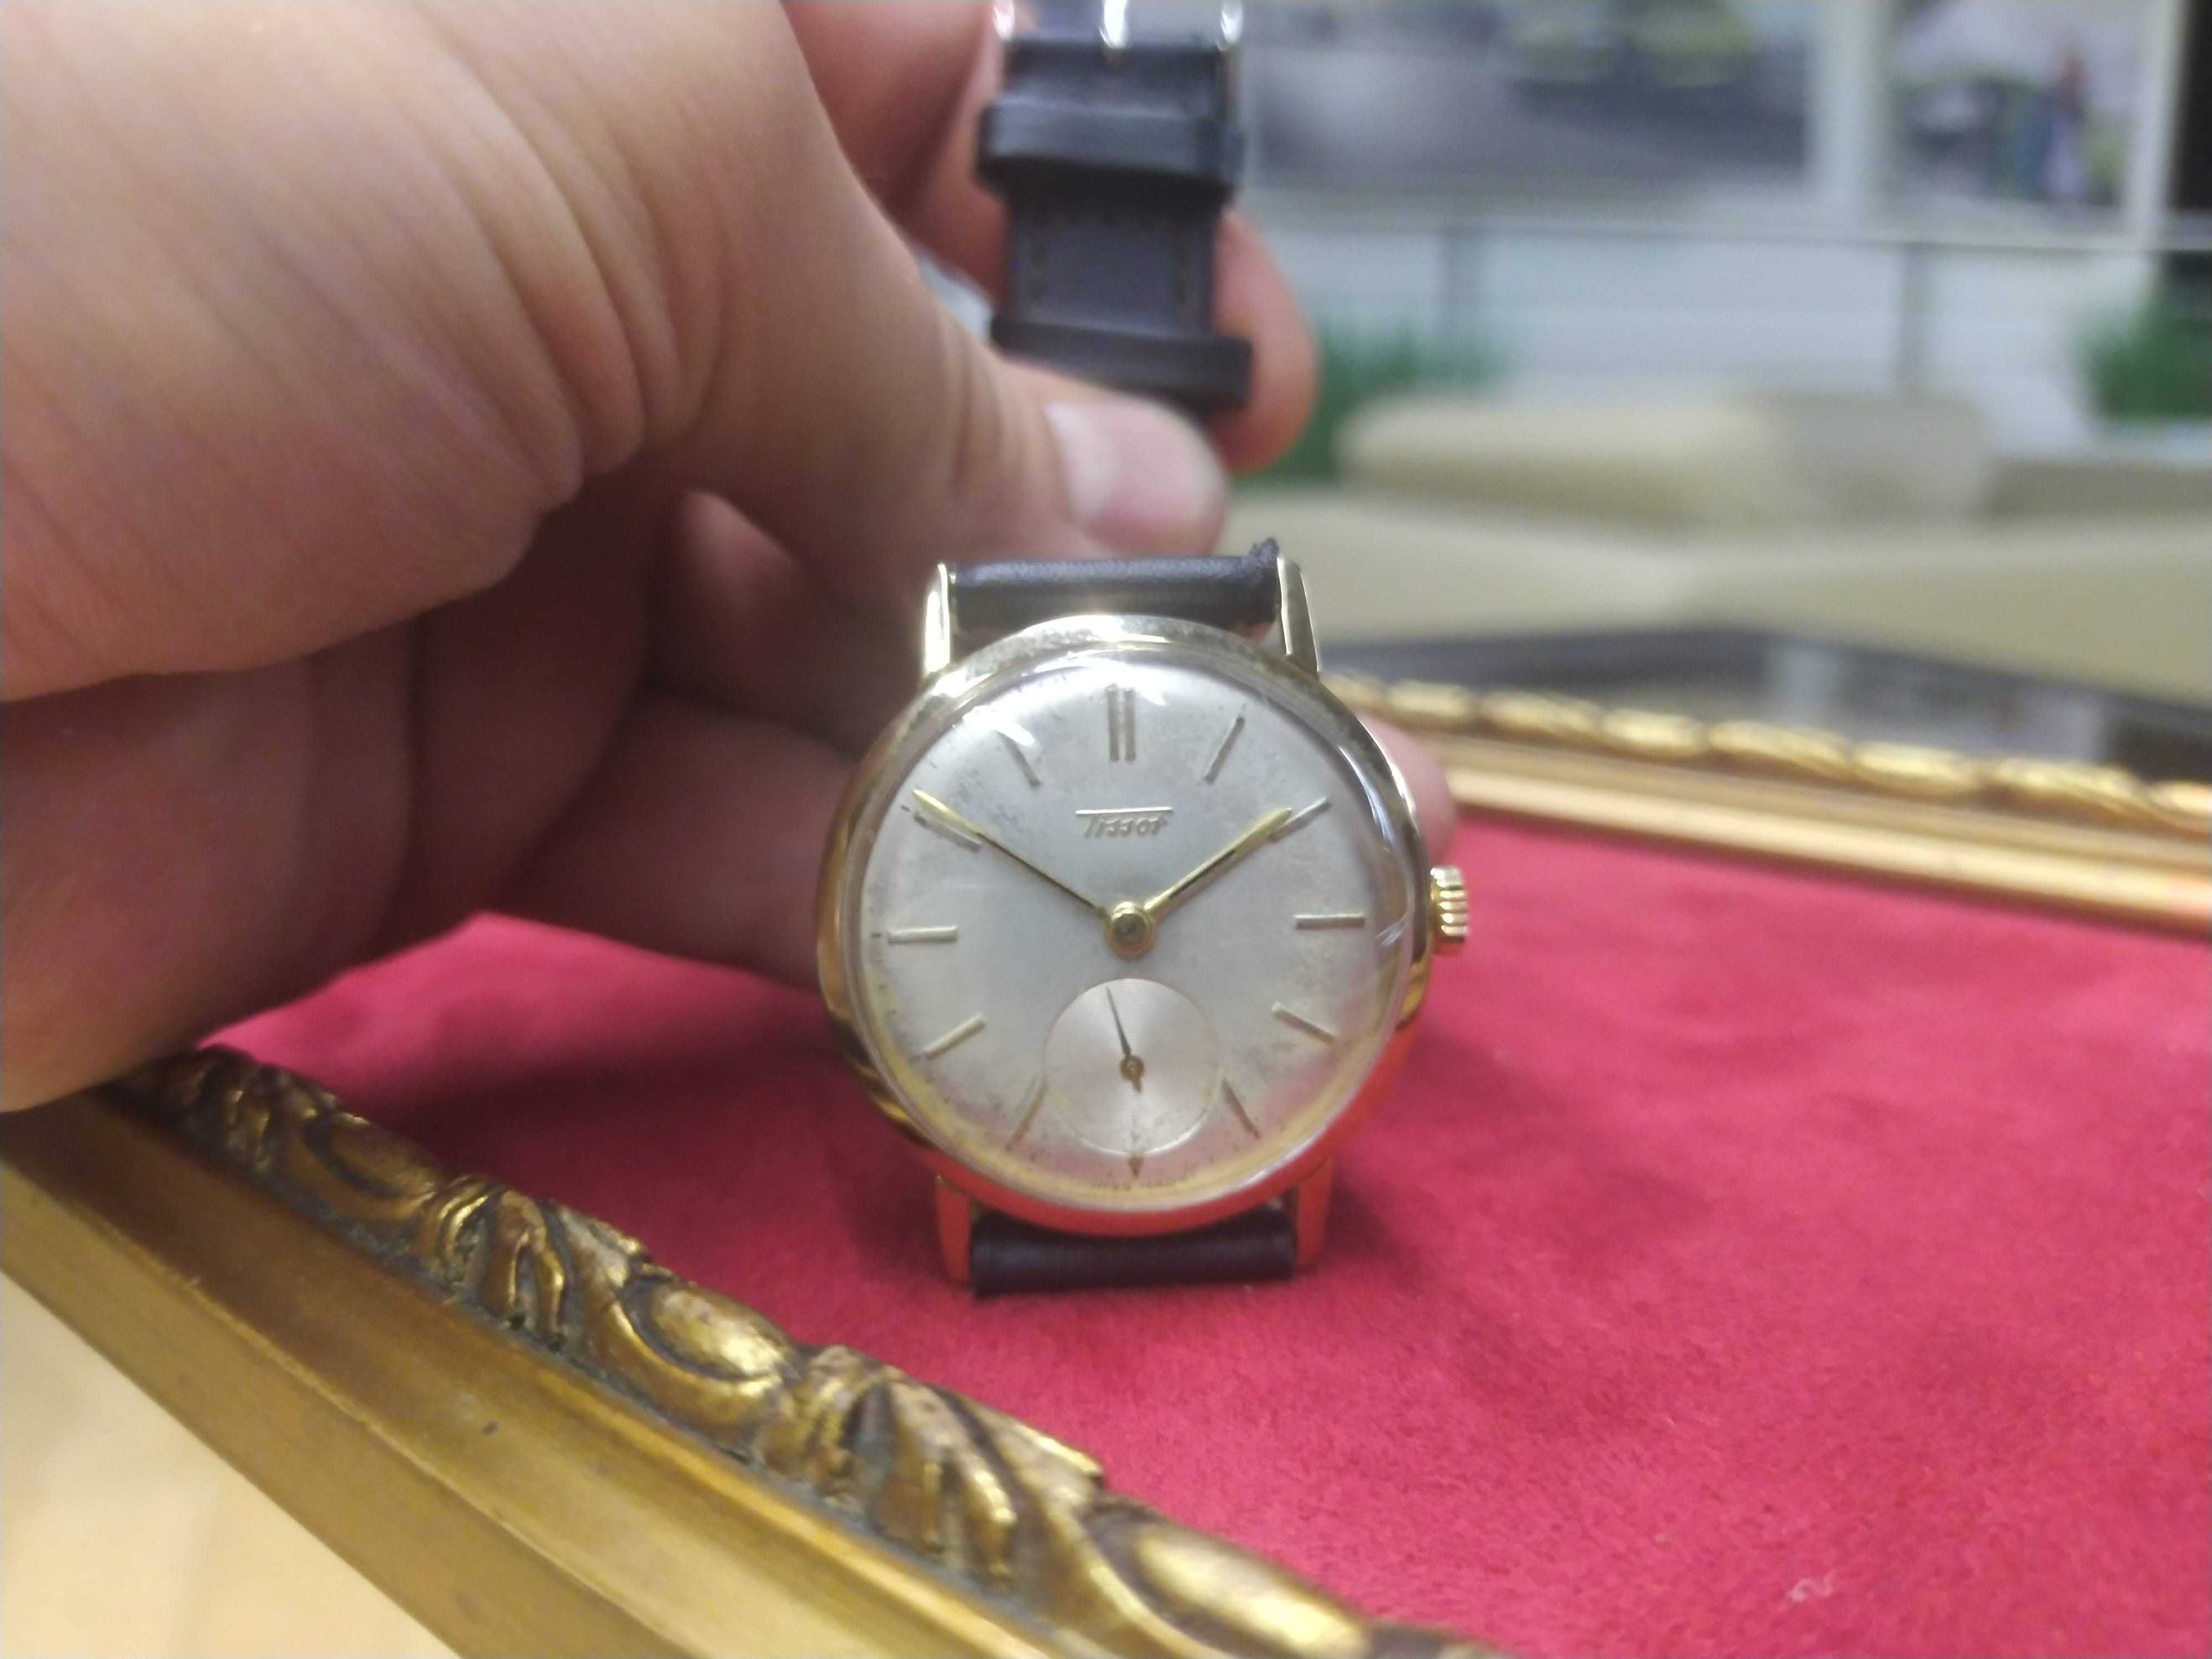 Zegarek Tissot Mechaniczny 16 Swiss Szwajcarski Vintage Subsekudna